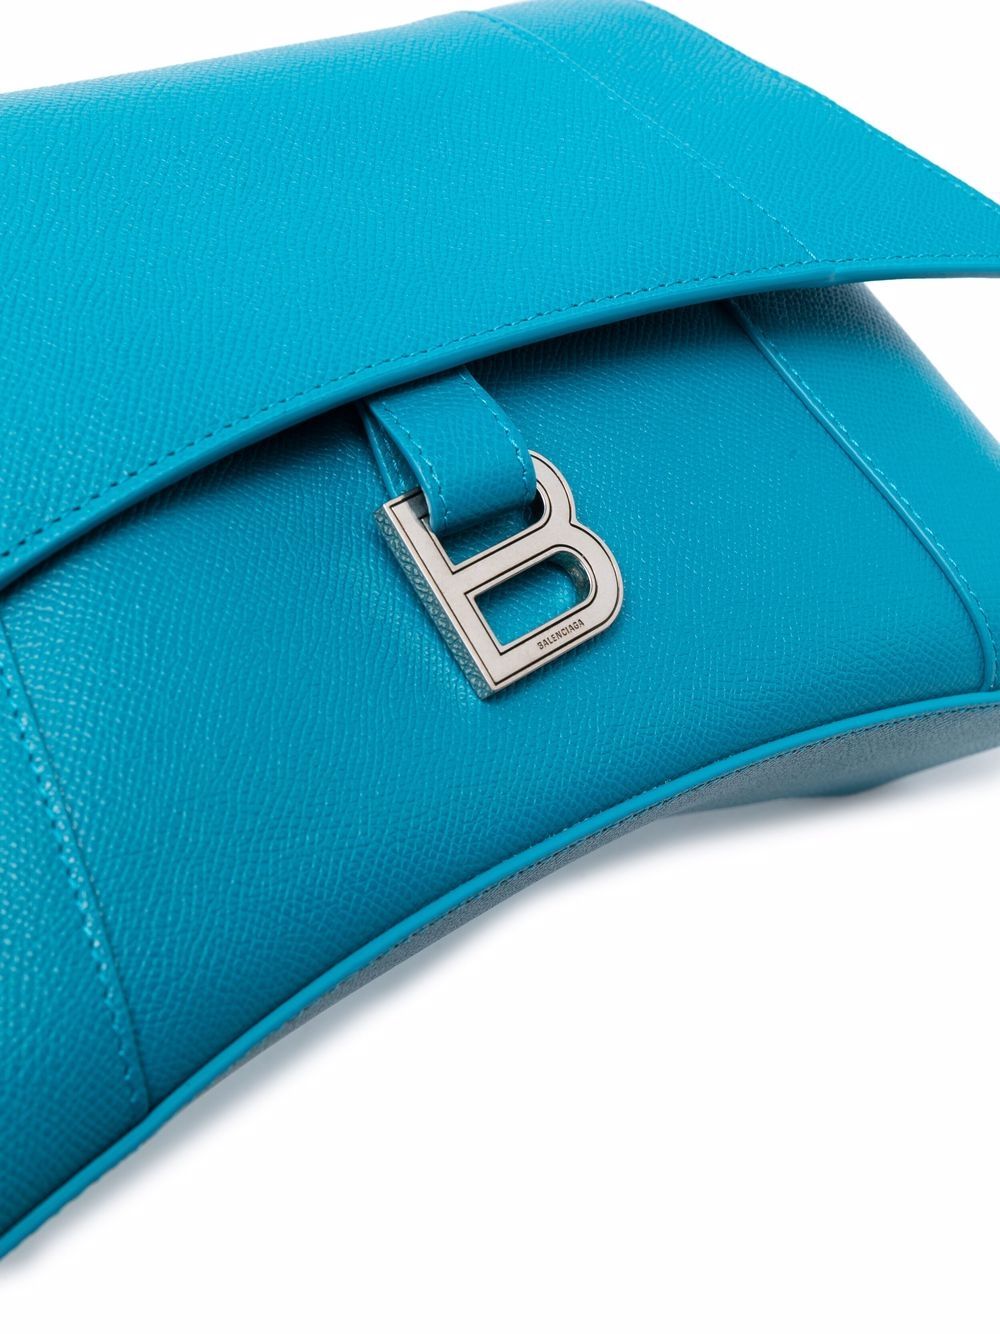 Balenciaga XS Baby Blue Round Soft Leather Crossbody Shoulder Bag NWT